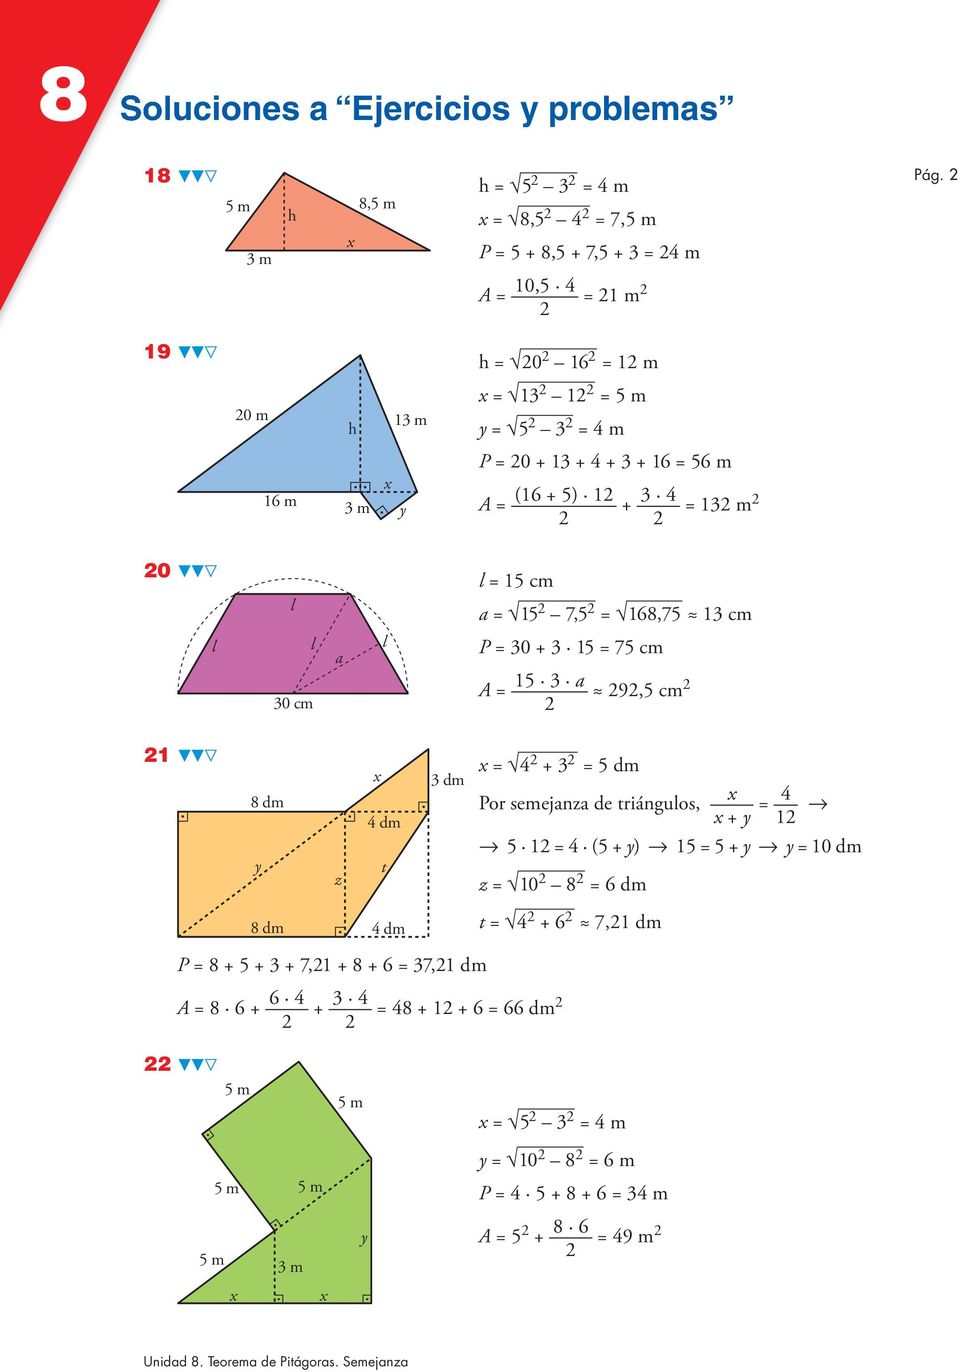 168,75 13 cm l l 30 cm a l P = 30 + 3 15 = 75 cm A = 15 3 a 9,5 cm 1 8 dm y z 4 dm t 3 dm = 4 + 3 = 5 dm Por semejanza de triángulos, + y = 4 1 8 8 5 1 = 4 (5 + y) 8 15 = 5